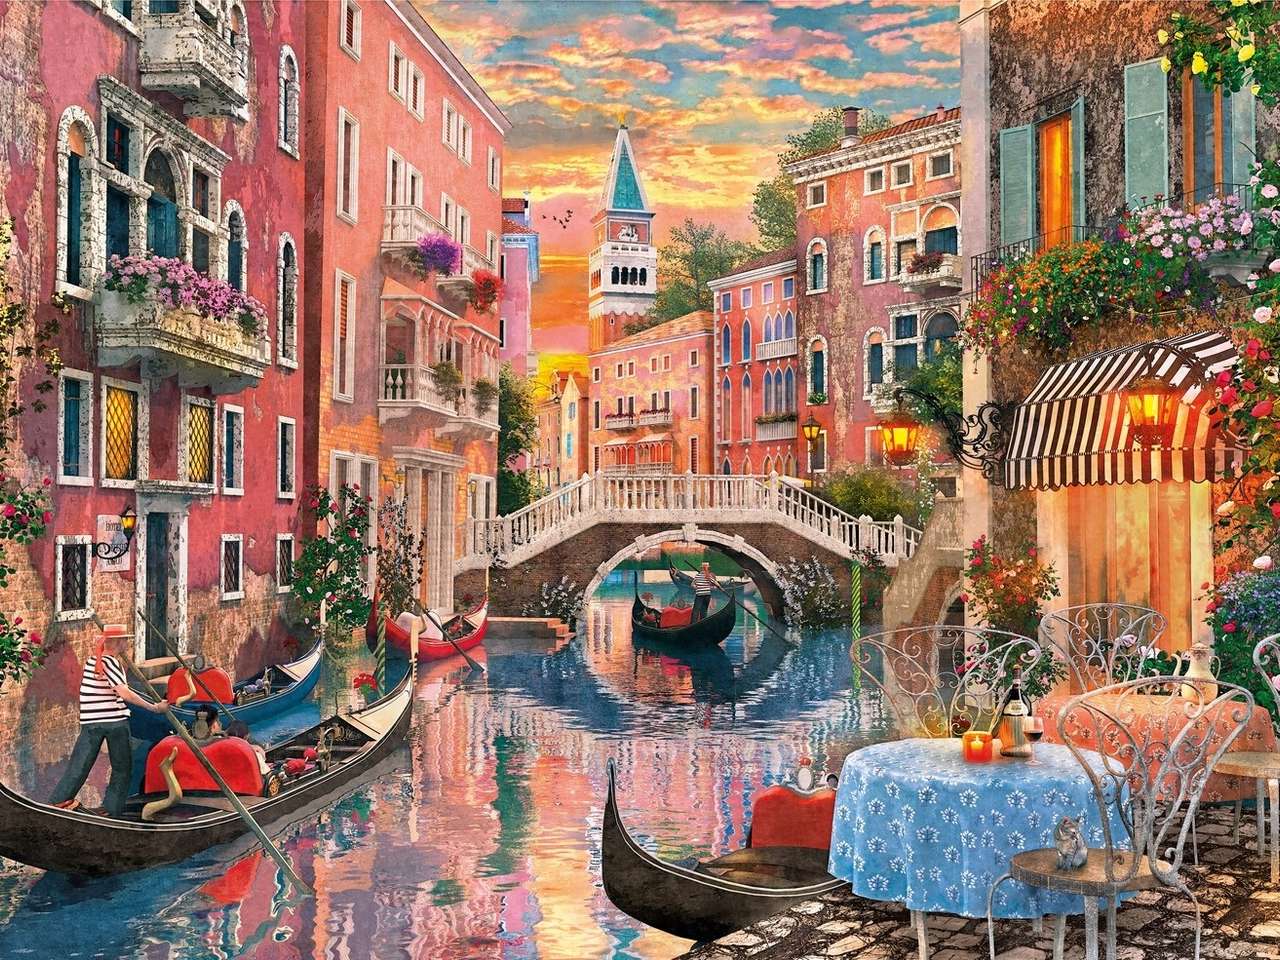 Gondoler i Venedig pussel på nätet